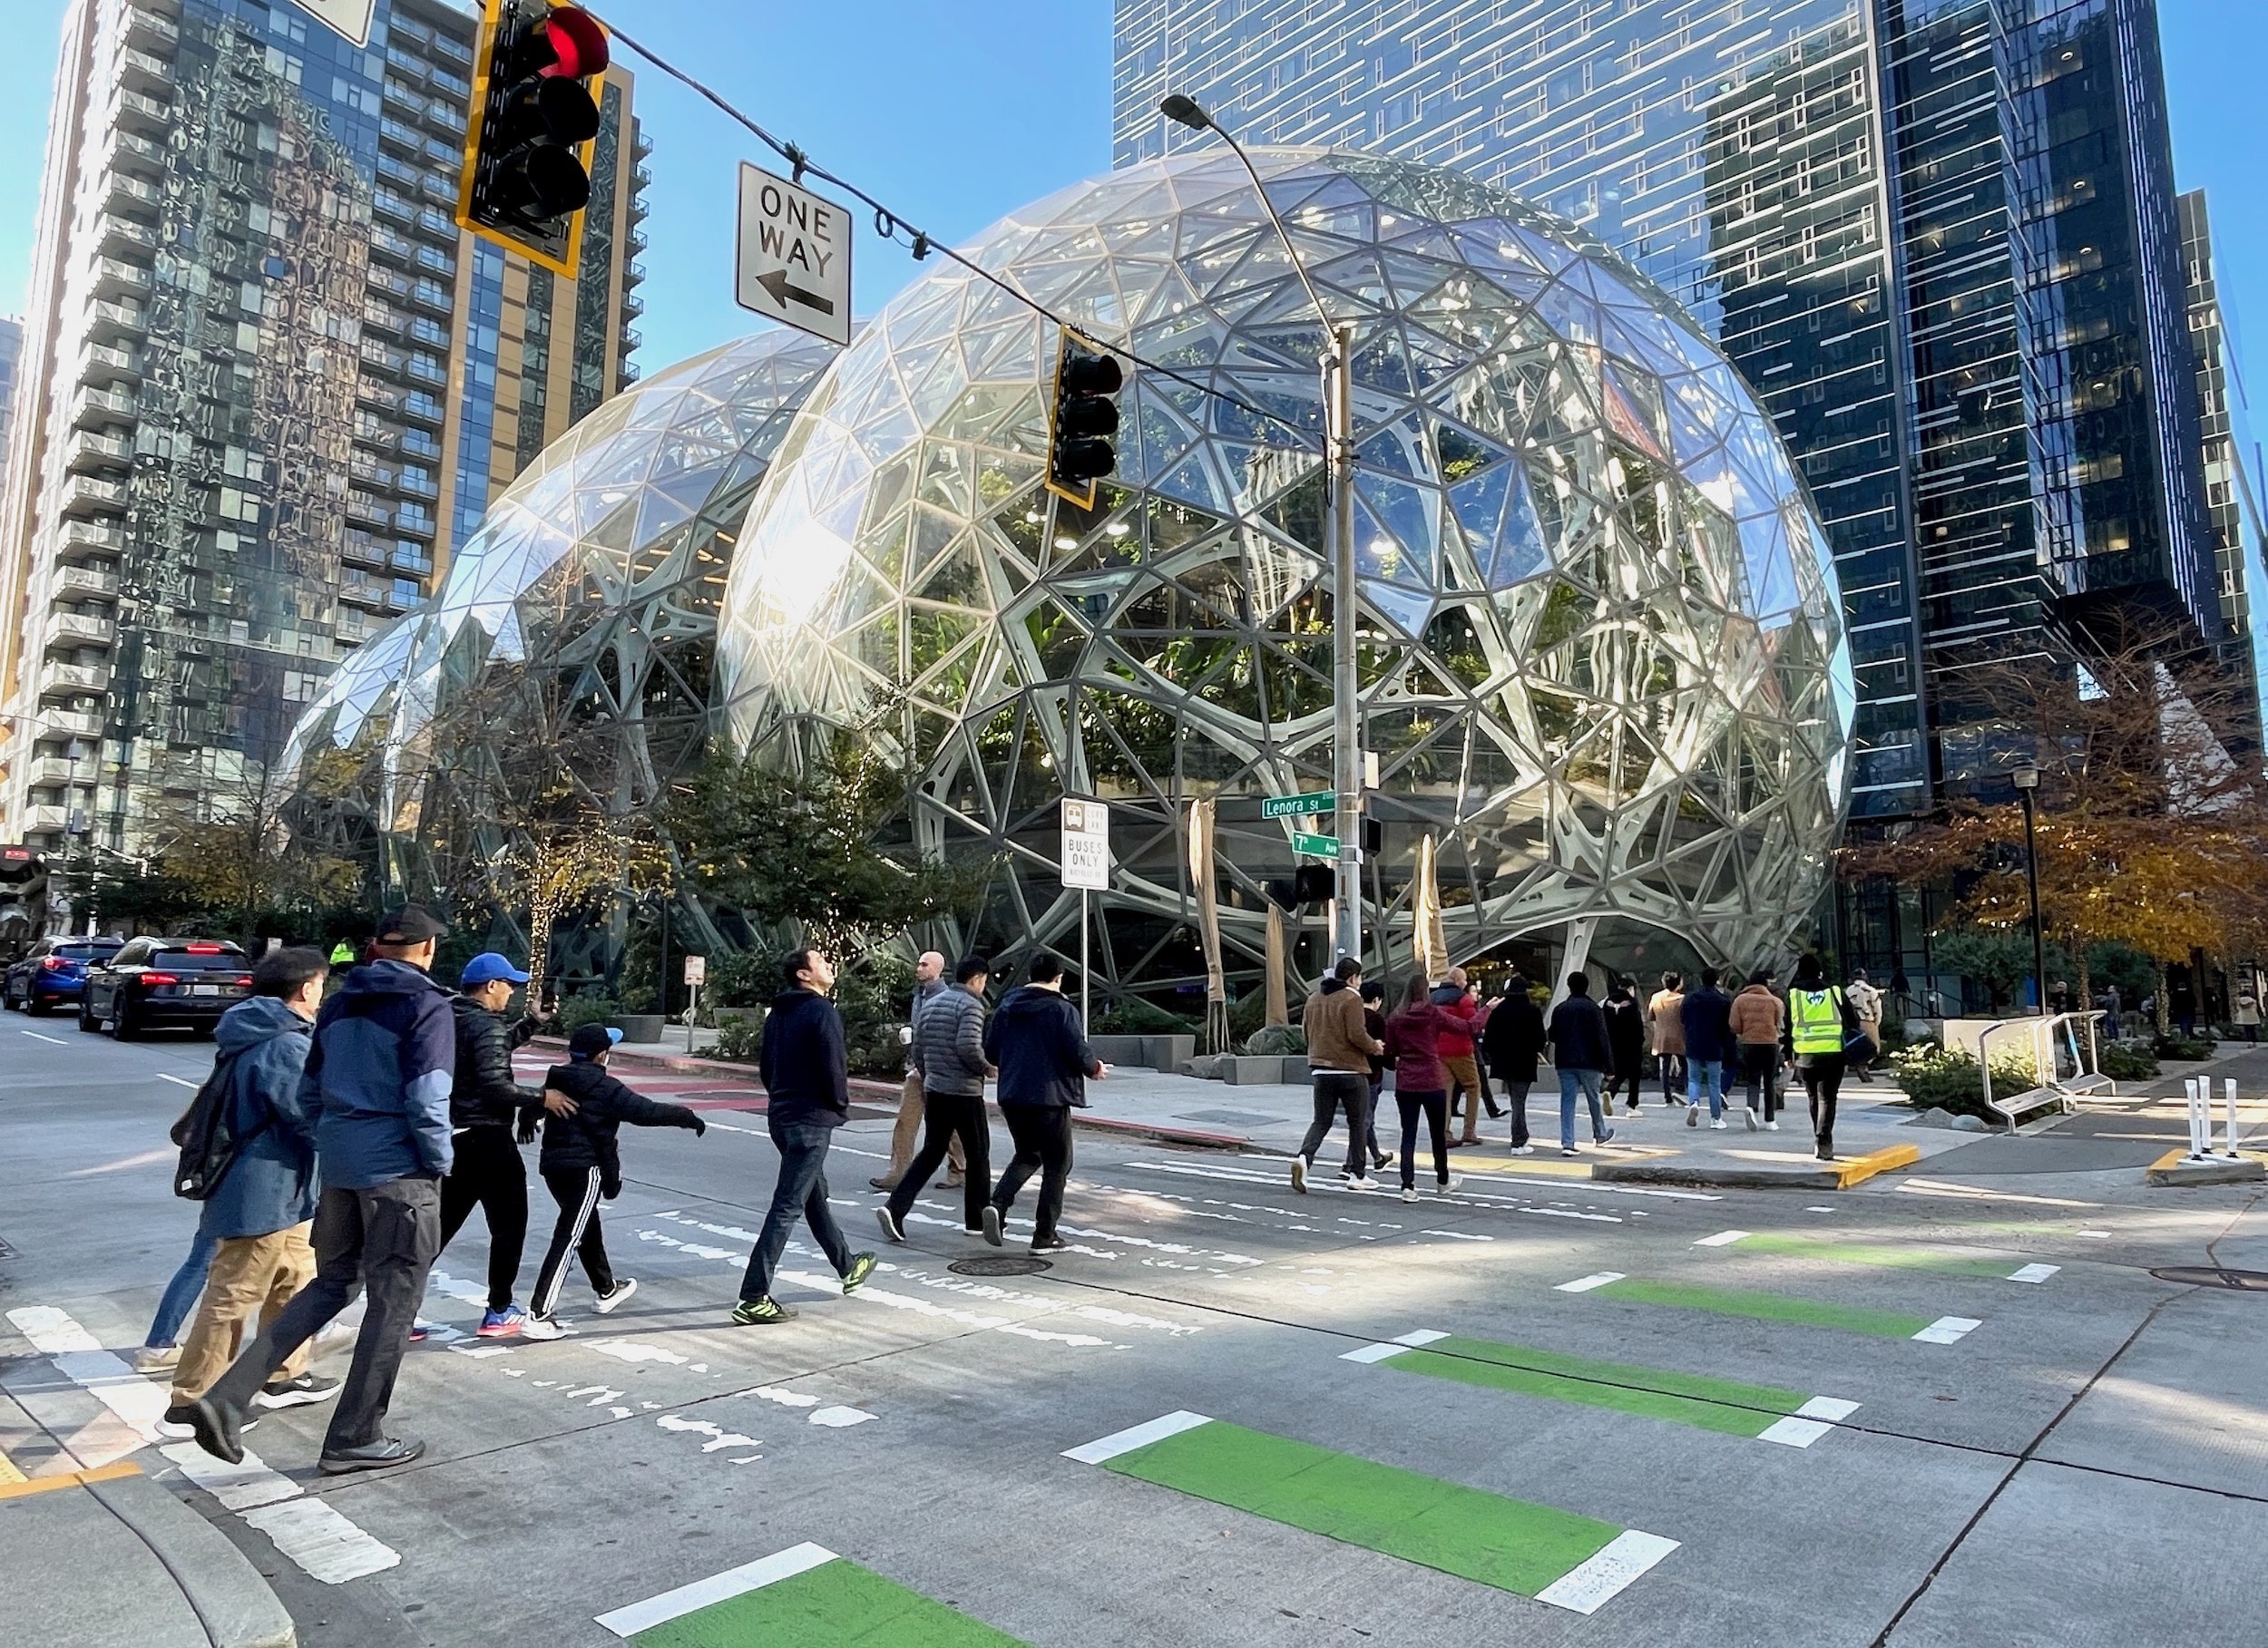 Amazon despedirá a 18,000 trabajadores corporativos y tecnológicos – GeekWire 1